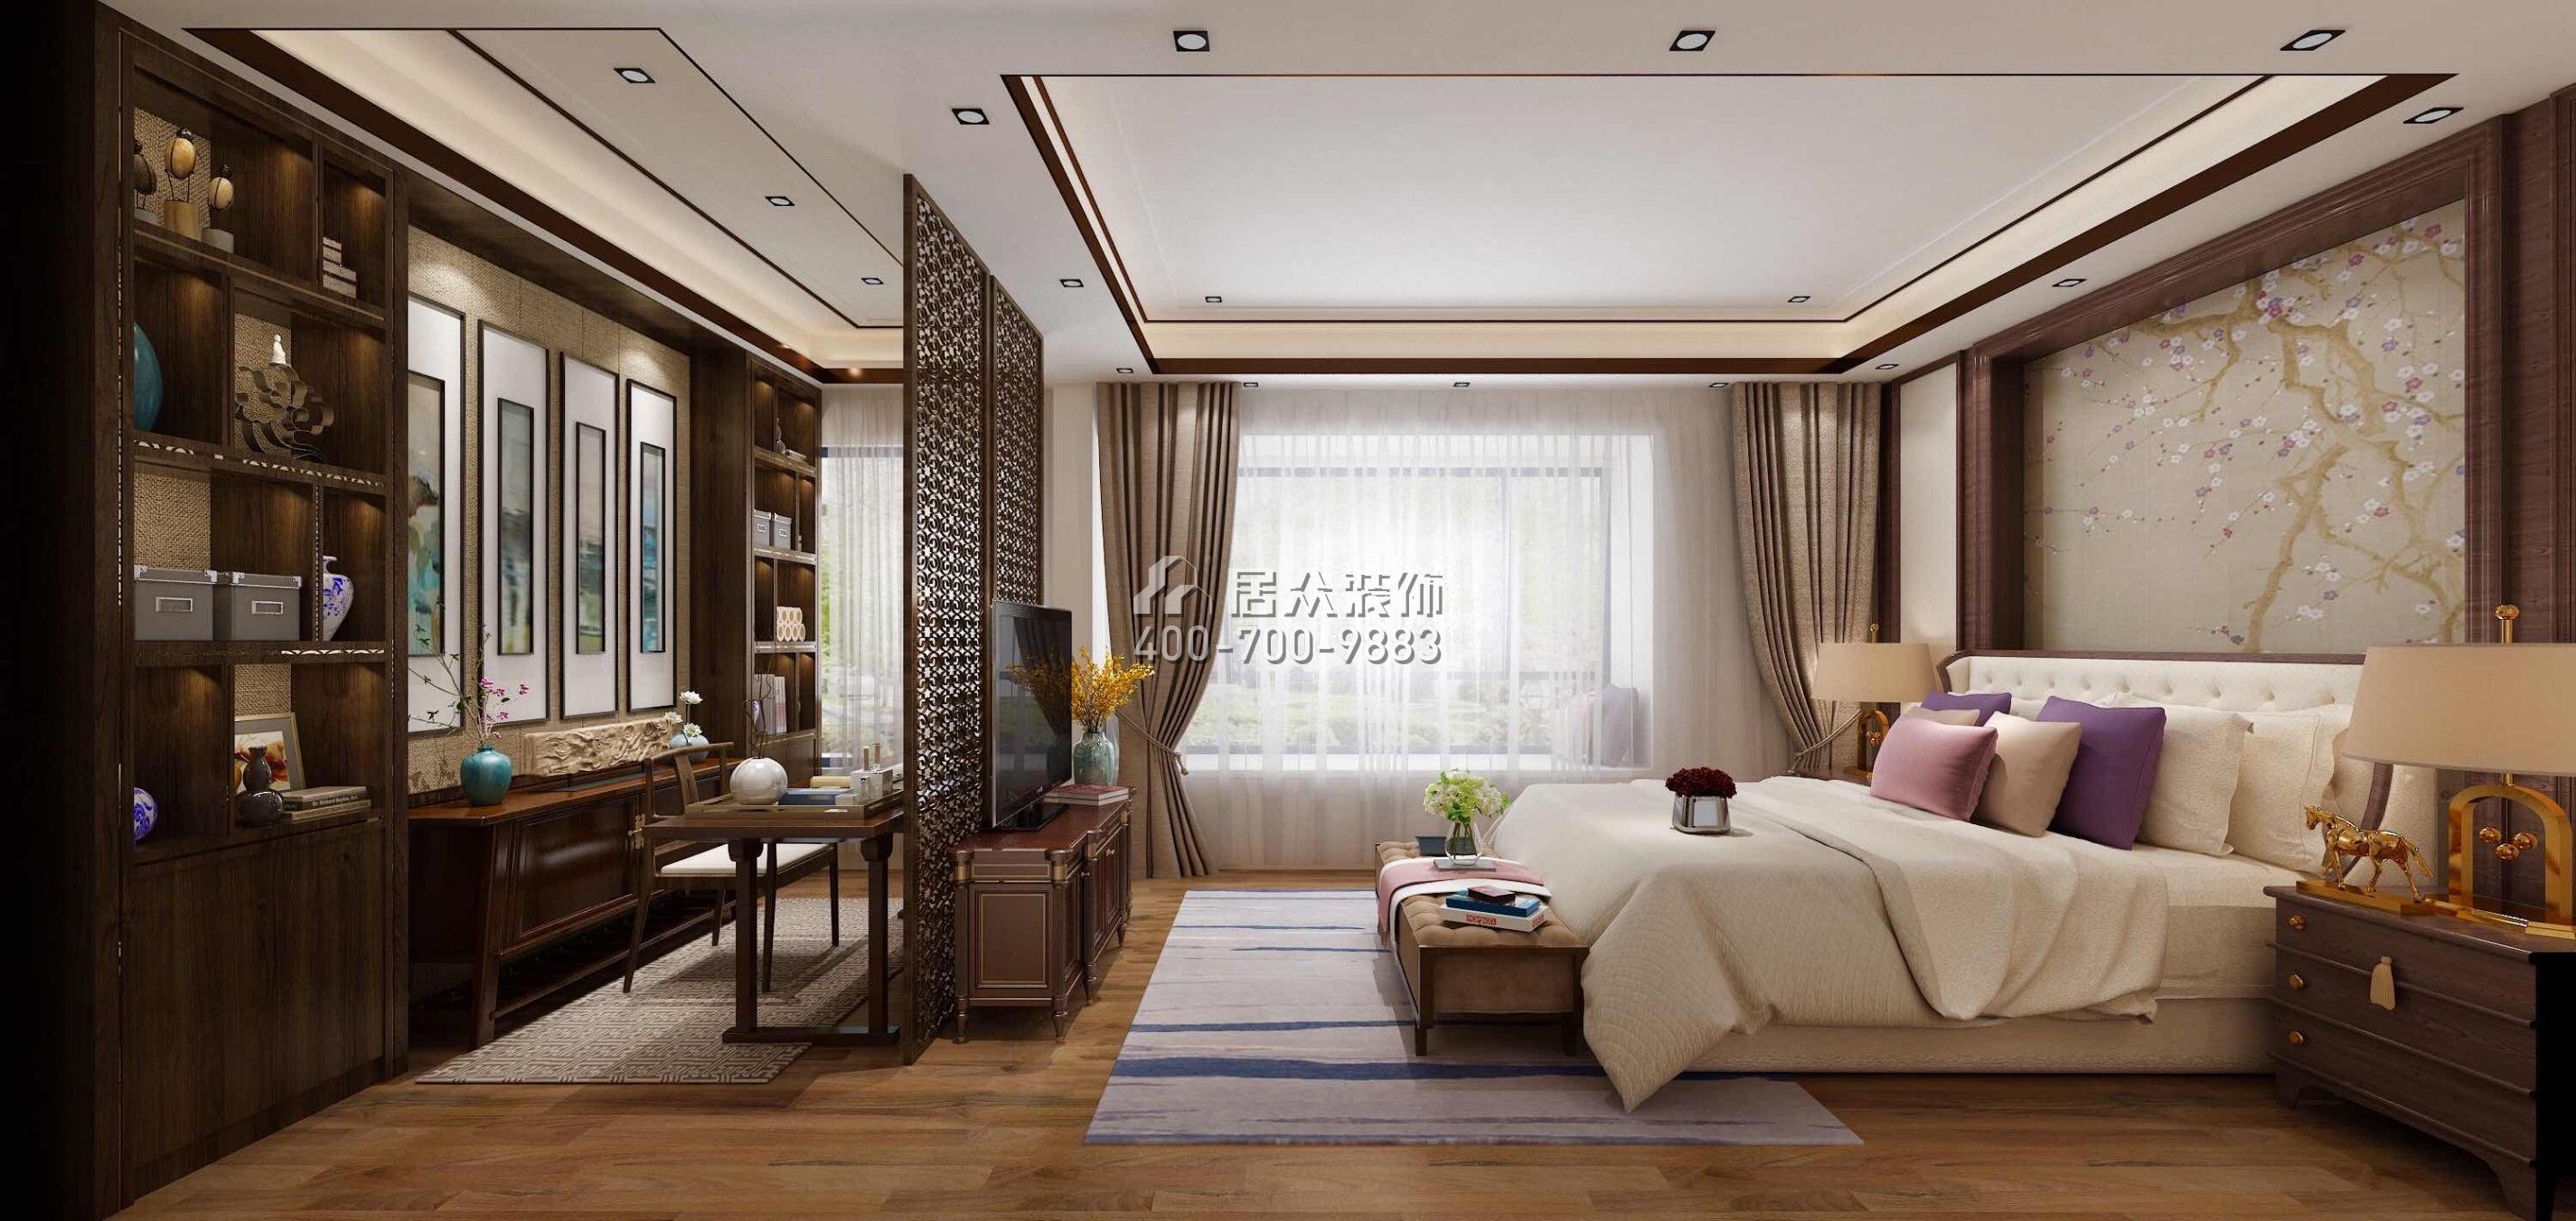 华发山庄330平方米中式风格复式户型卧室装修效果图